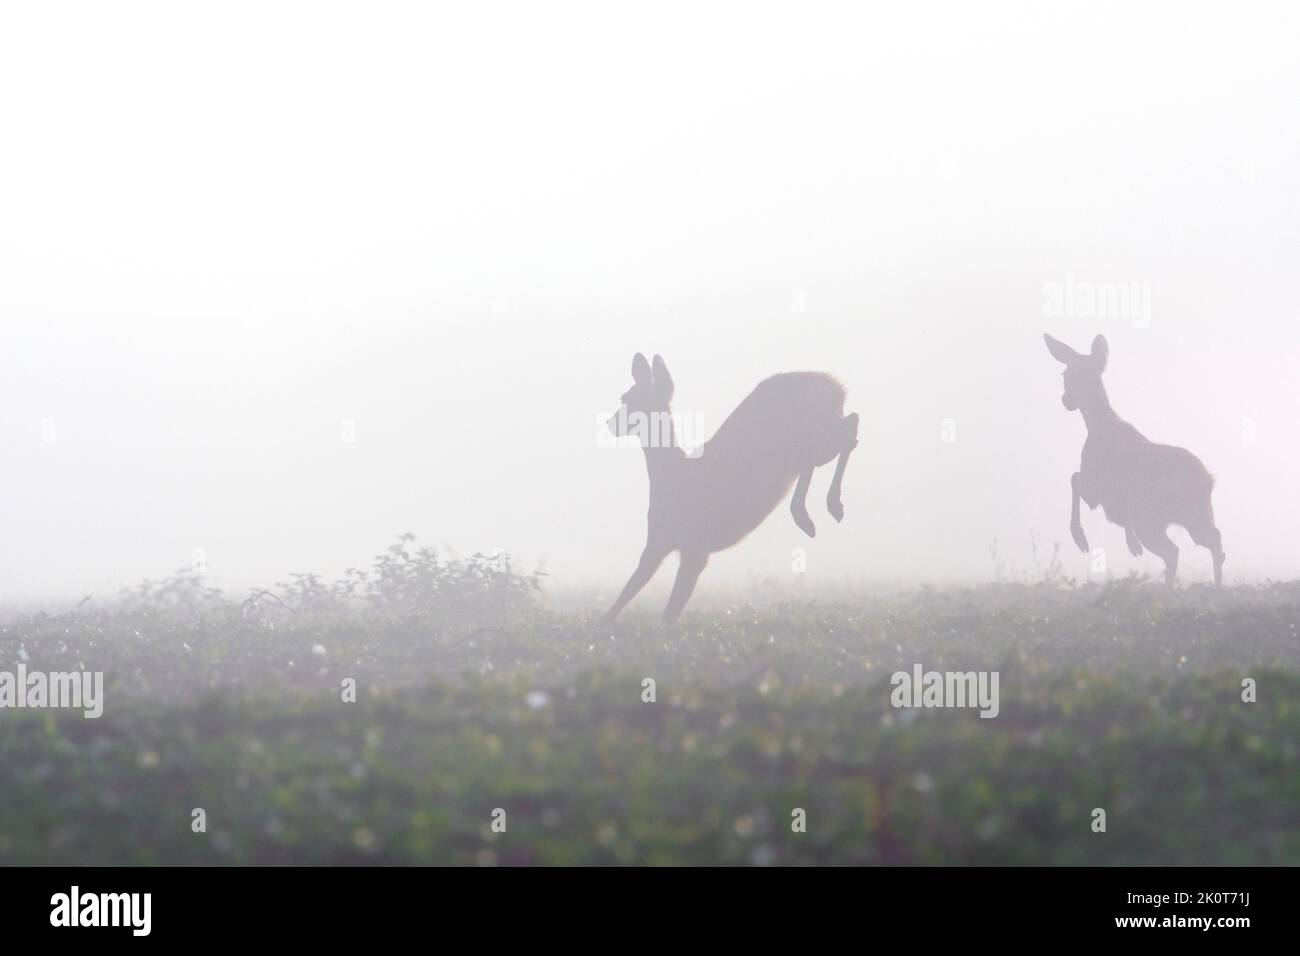 Cerf de Virginie européen (Capranolus capranolus) femelle / doe avec jeunes fuyant dans les prairies / prairies couvertes de brouillard épais à la fin de l'été / début de l'automne Banque D'Images